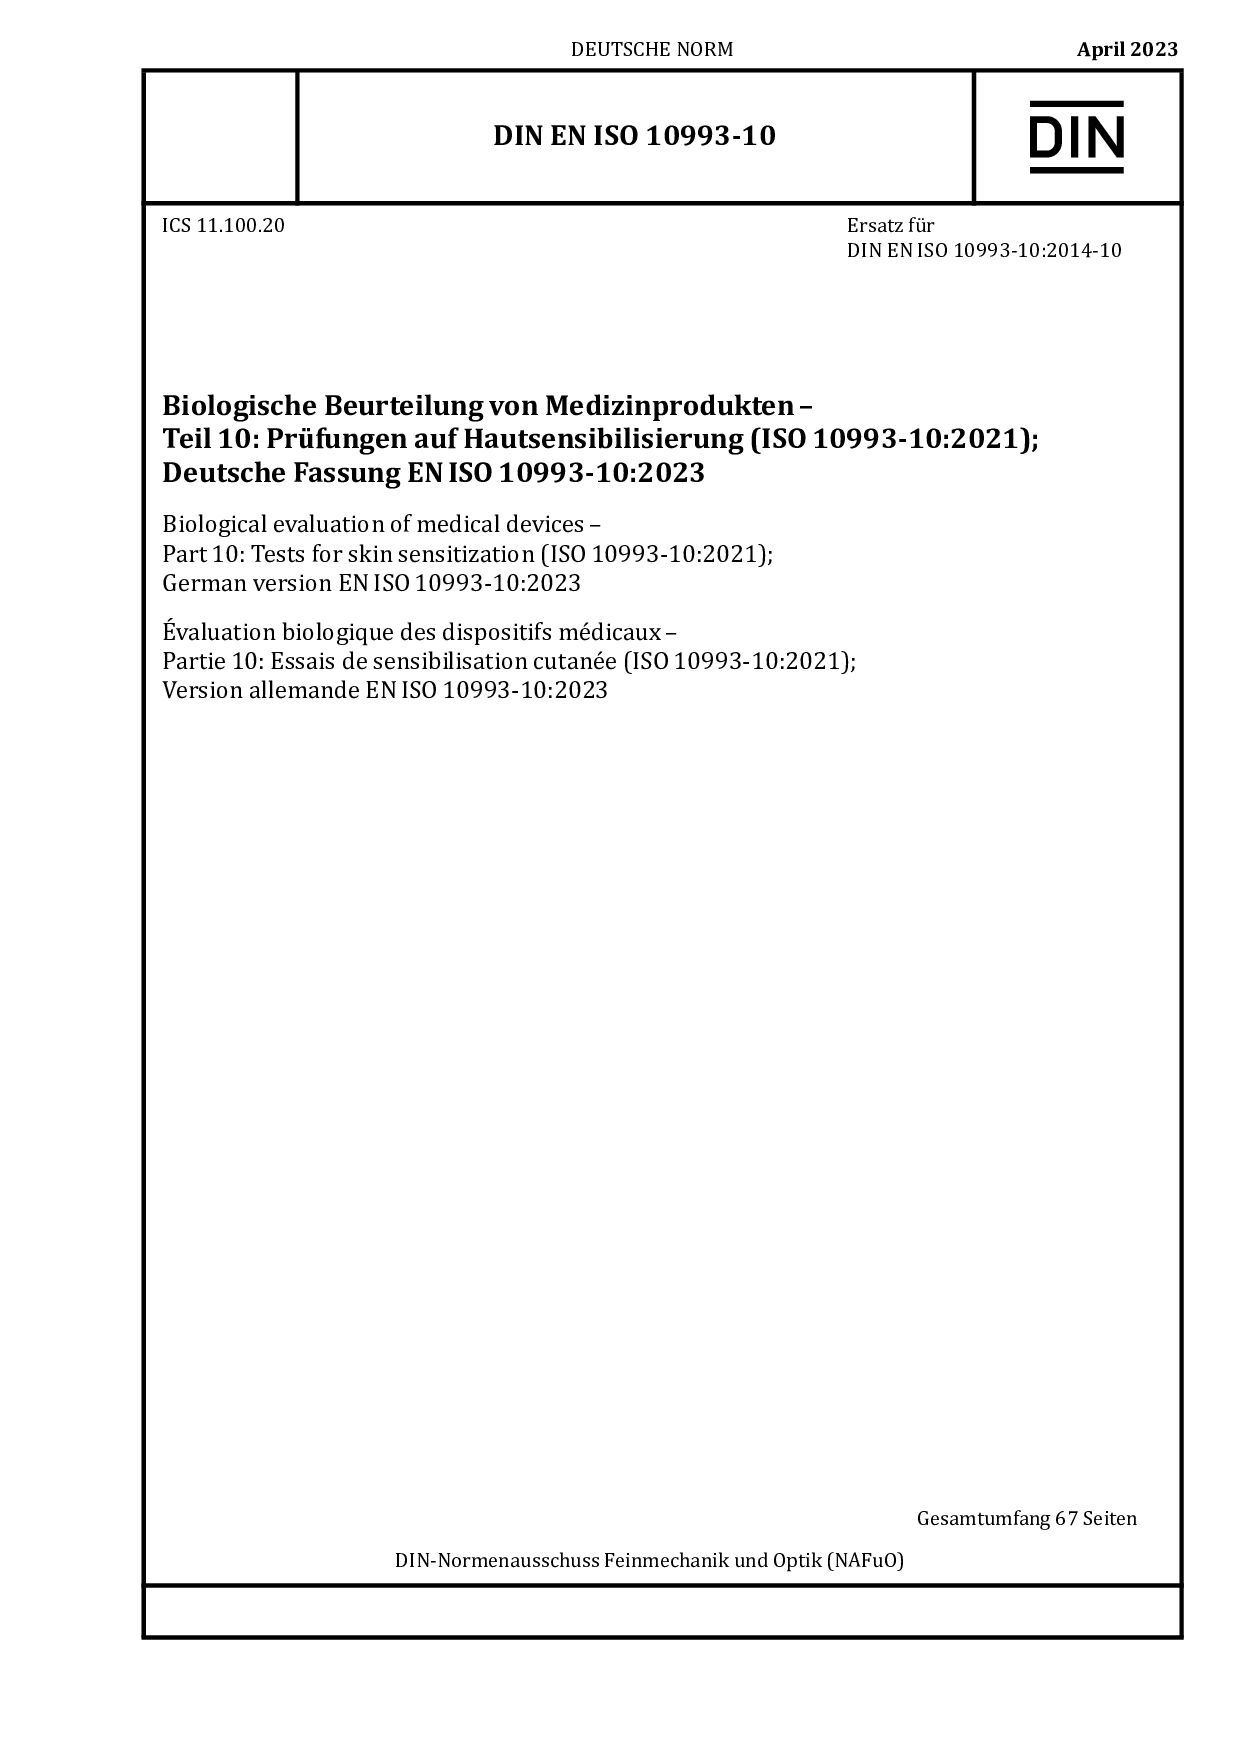 DIN EN ISO 10993-10:2023封面图